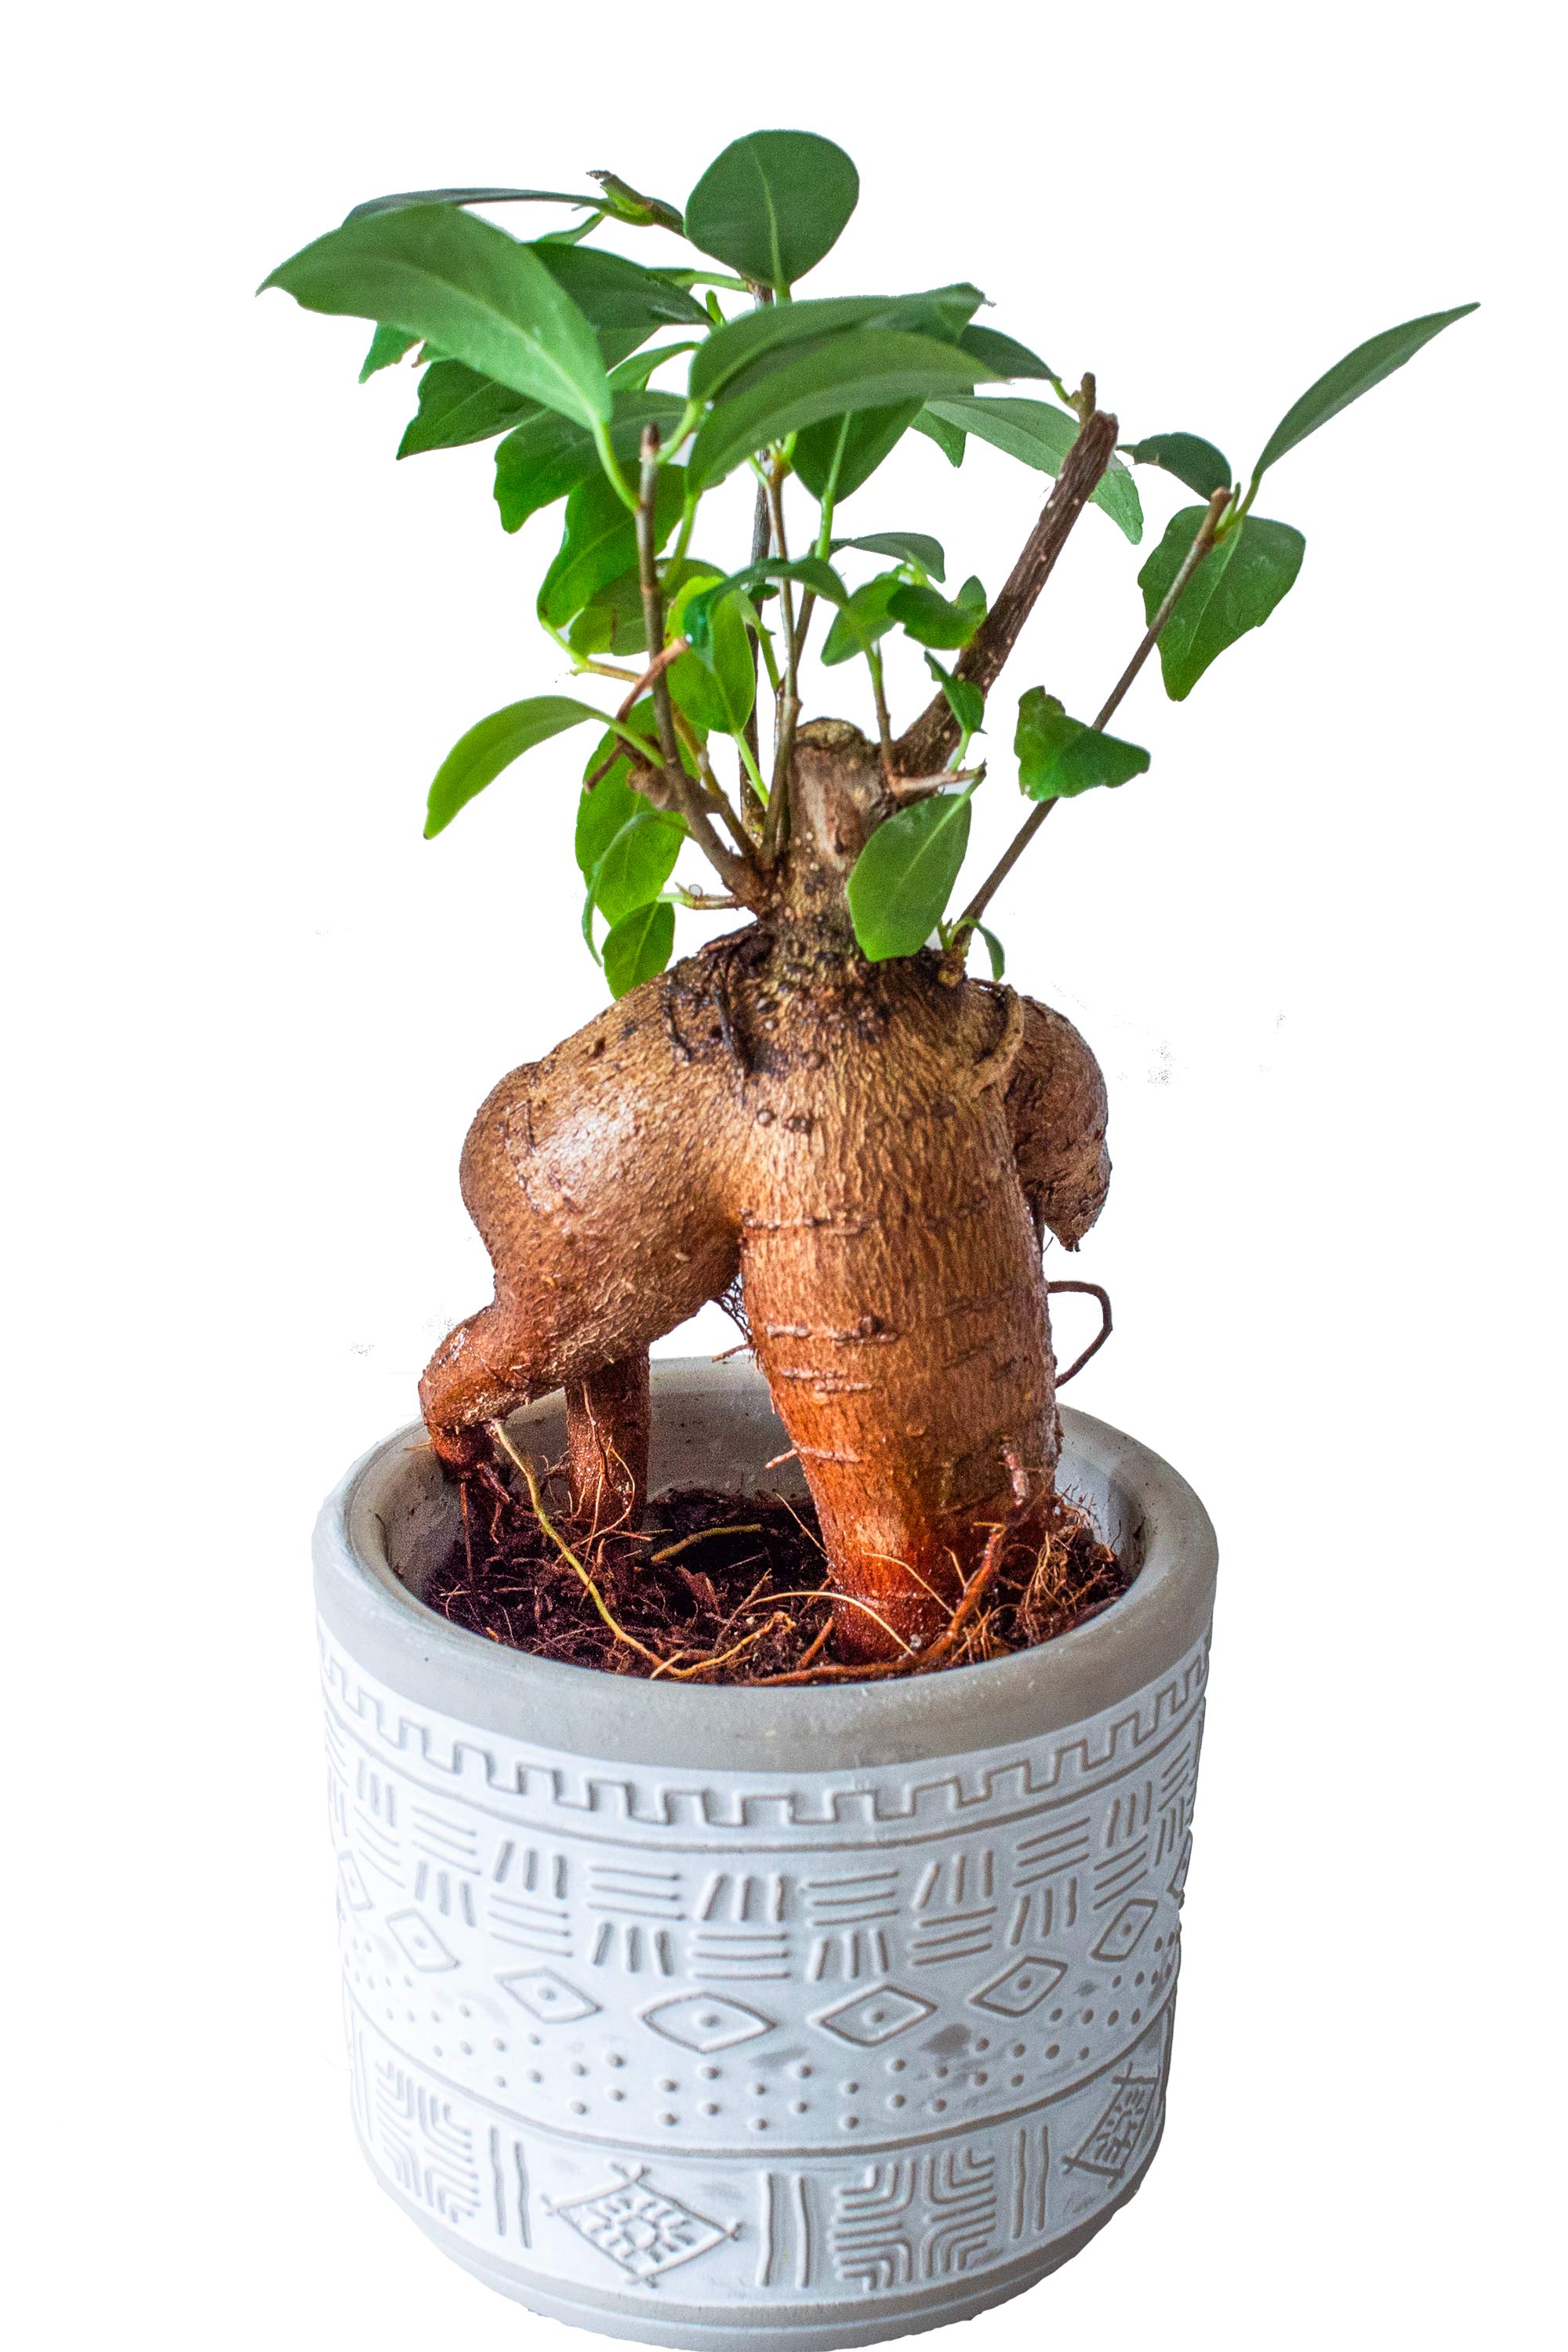 ガジュマル 2号 陶器鉢 ミニ 観葉植物 本物 小さい 卓上 インテリア 玄関 トイレ 誕生日 還暦 お祝い ギフト プレゼント